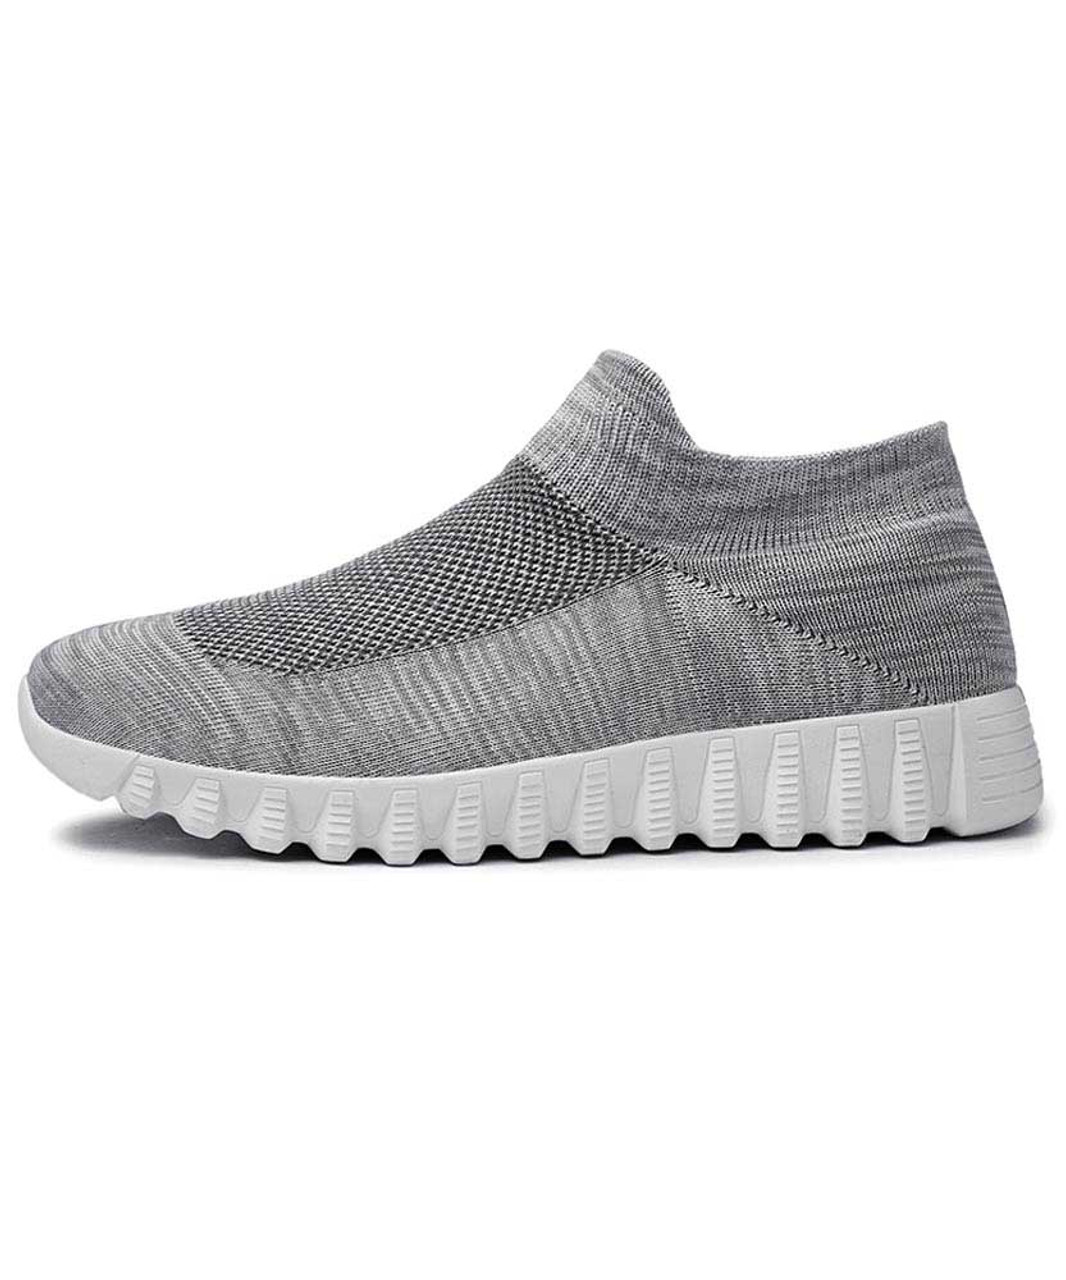 Grey flyknit textured slip on sock like fit shoe sneaker | Mens shoe ...